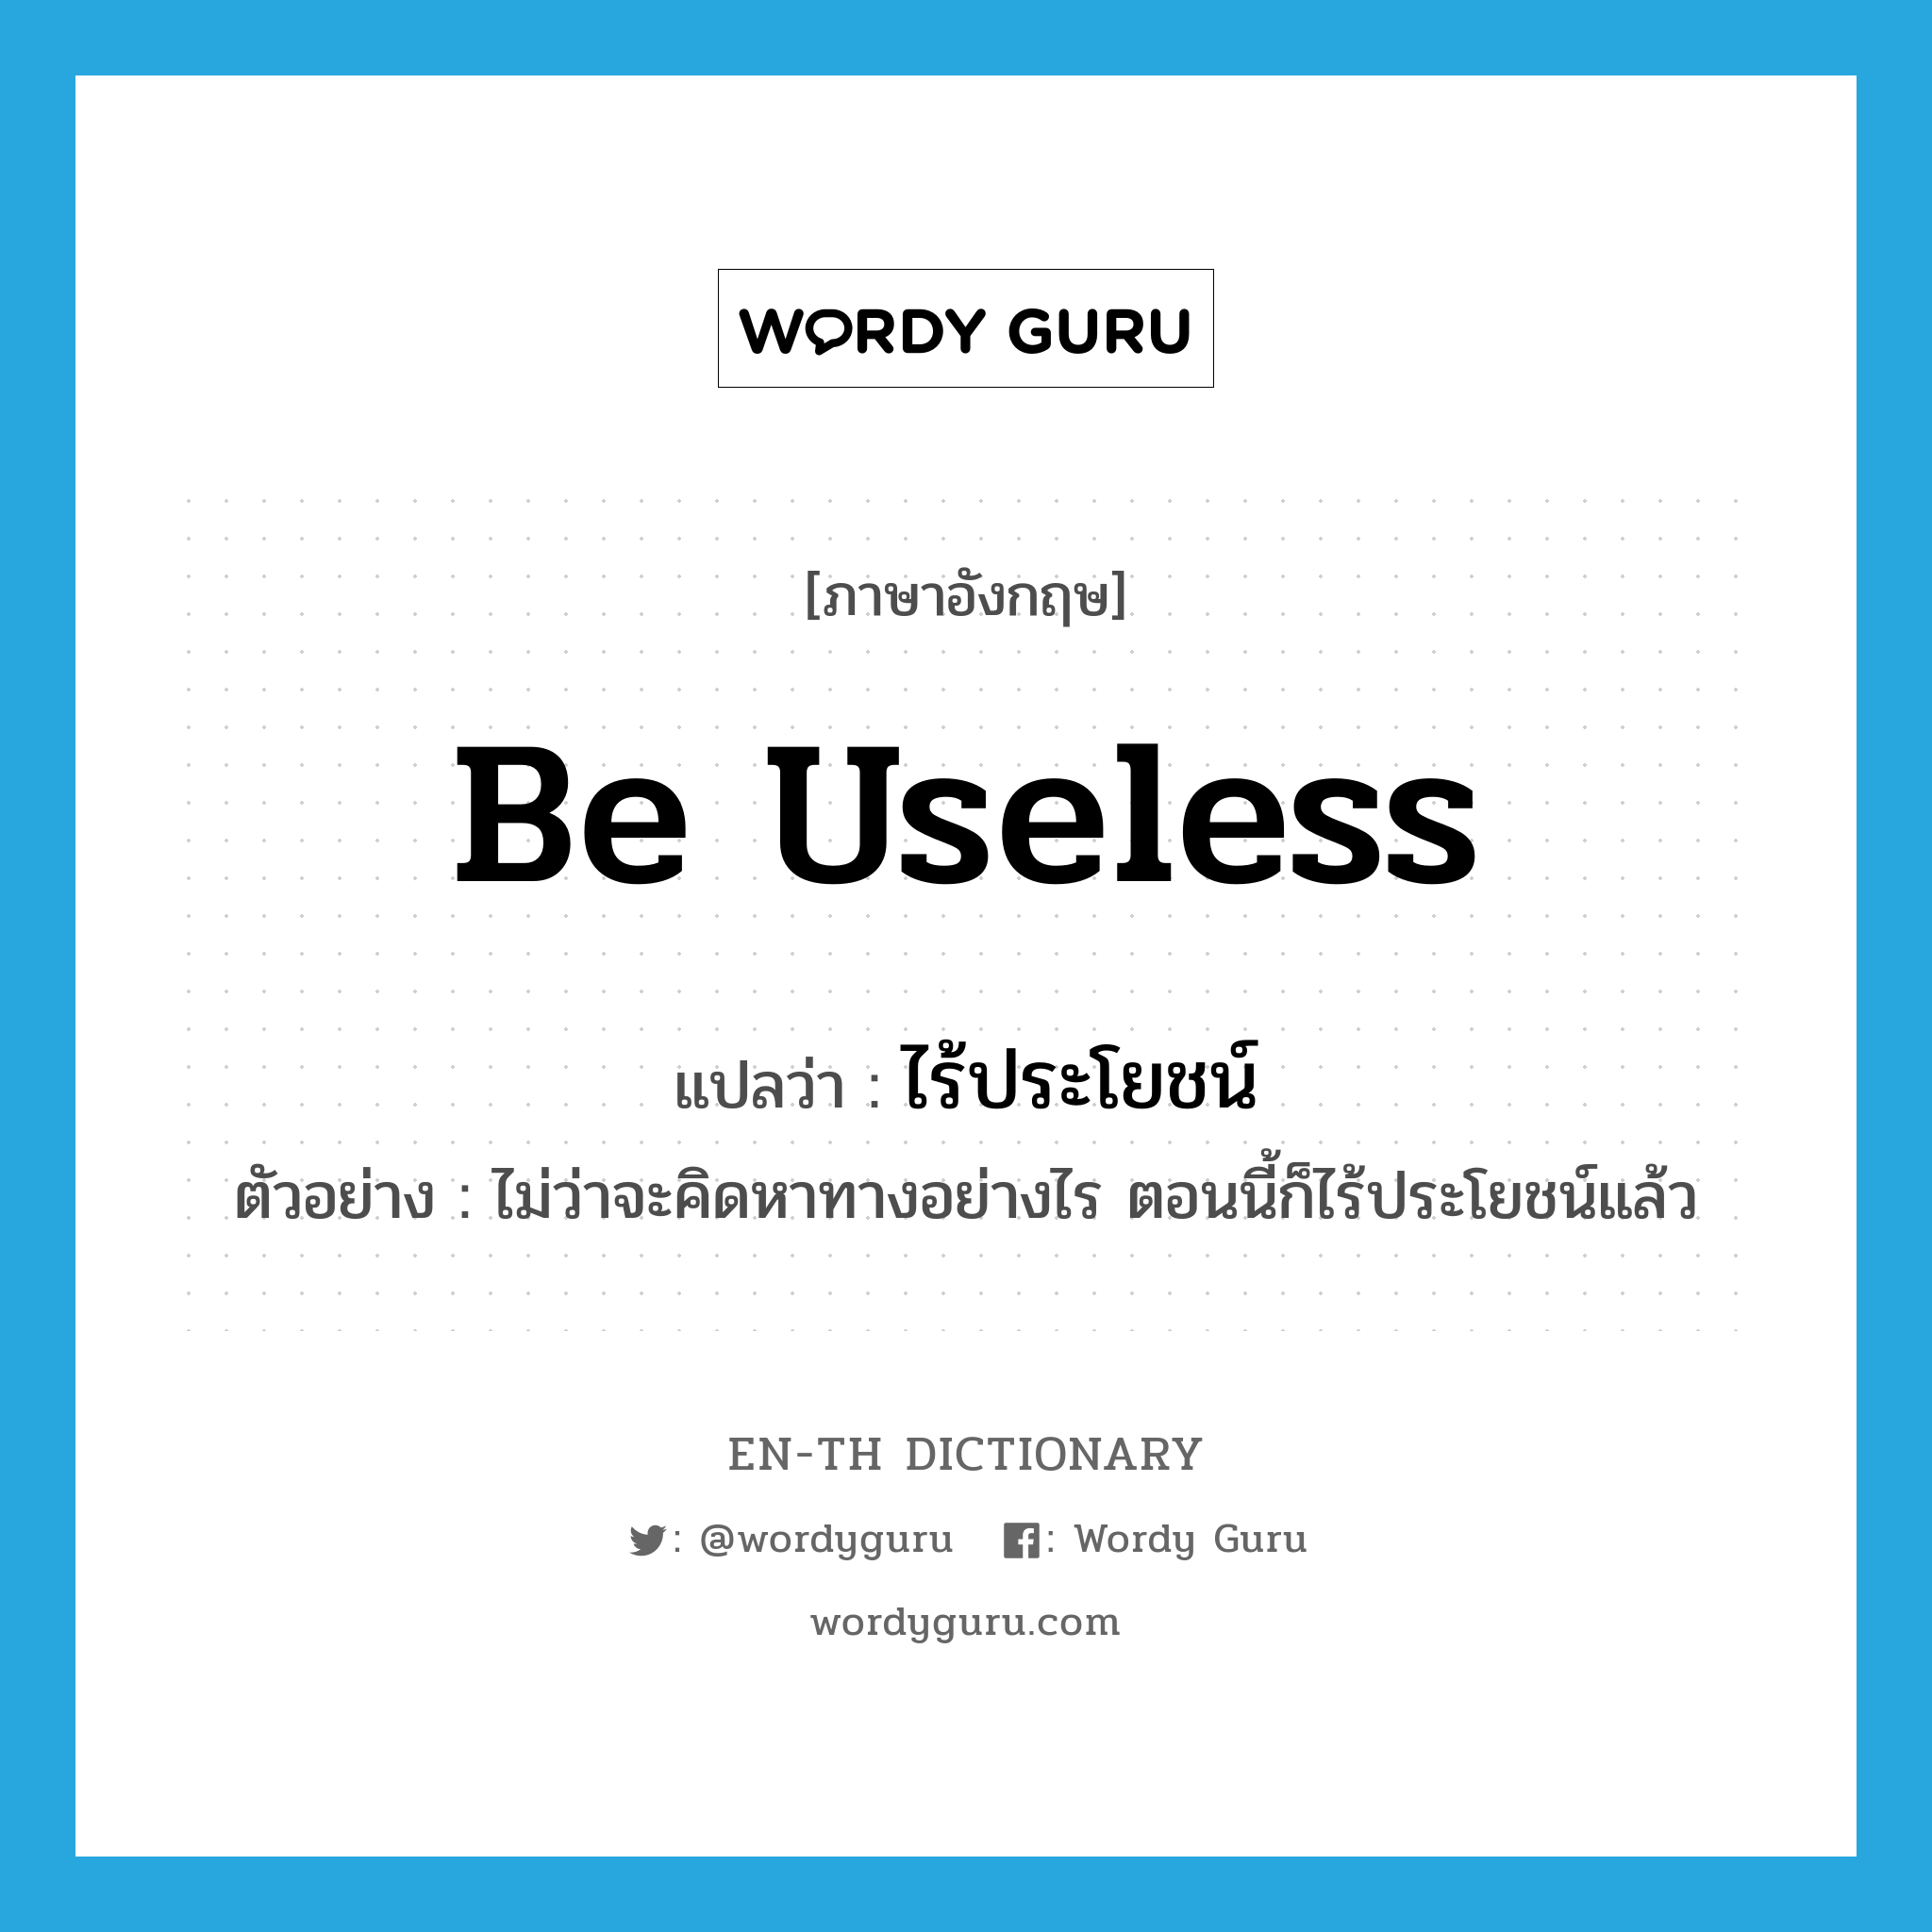 be useless แปลว่า?, คำศัพท์ภาษาอังกฤษ be useless แปลว่า ไร้ประโยชน์ ประเภท V ตัวอย่าง ไม่ว่าจะคิดหาทางอย่างไร ตอนนี้ก็ไร้ประโยชน์แล้ว หมวด V